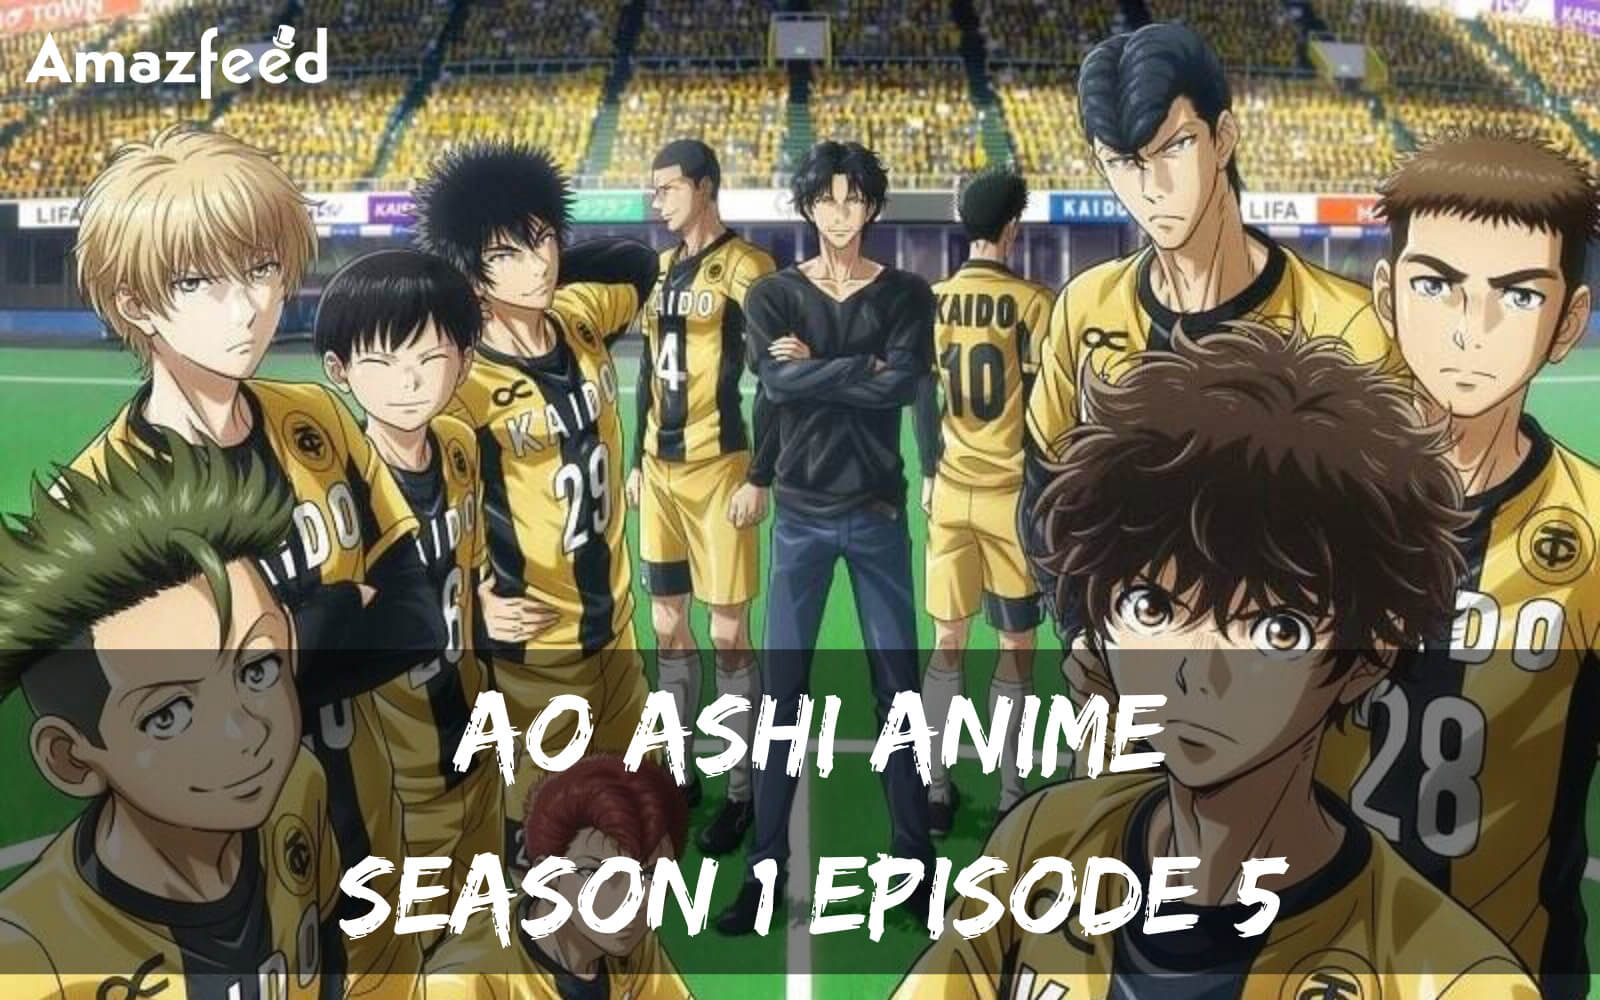 Ao Ashi Anime Season 1 Episode 5 release date